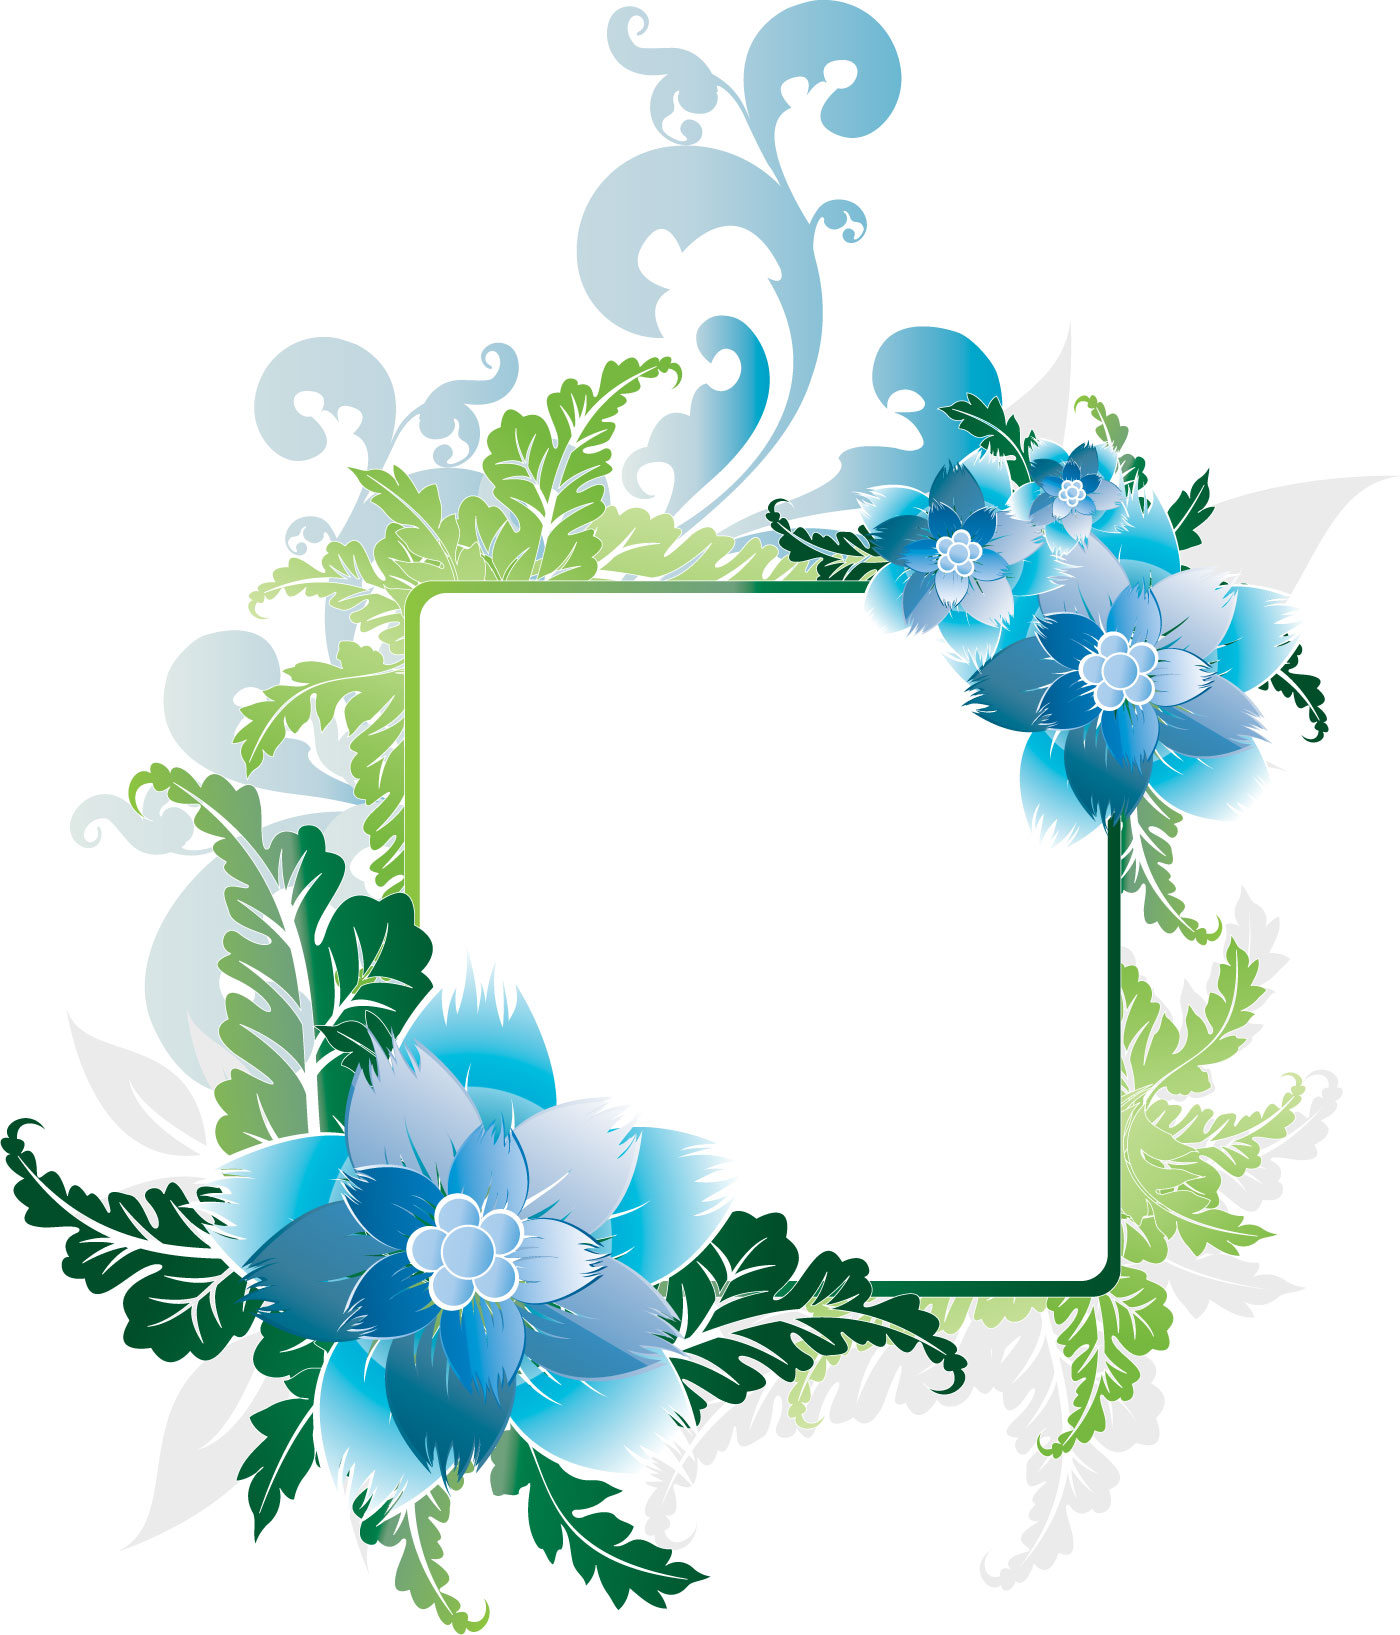 ポップでかわいい花のイラスト フリー素材 No 1011 青 水色 葉